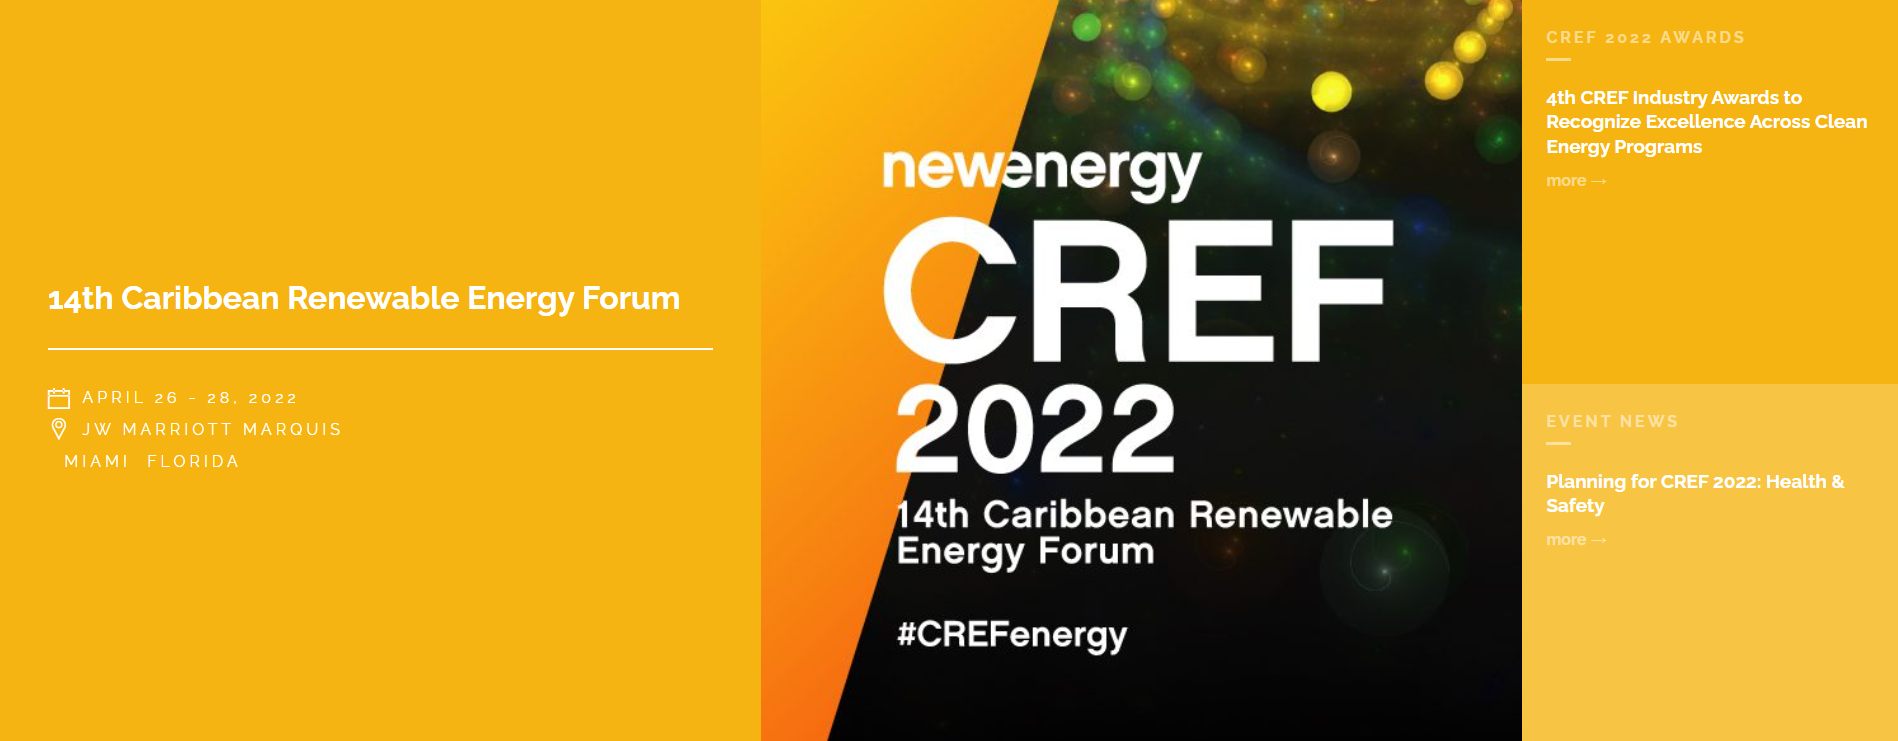 Caribbean Renewable Energy Forum April 2628, 2022 » econext